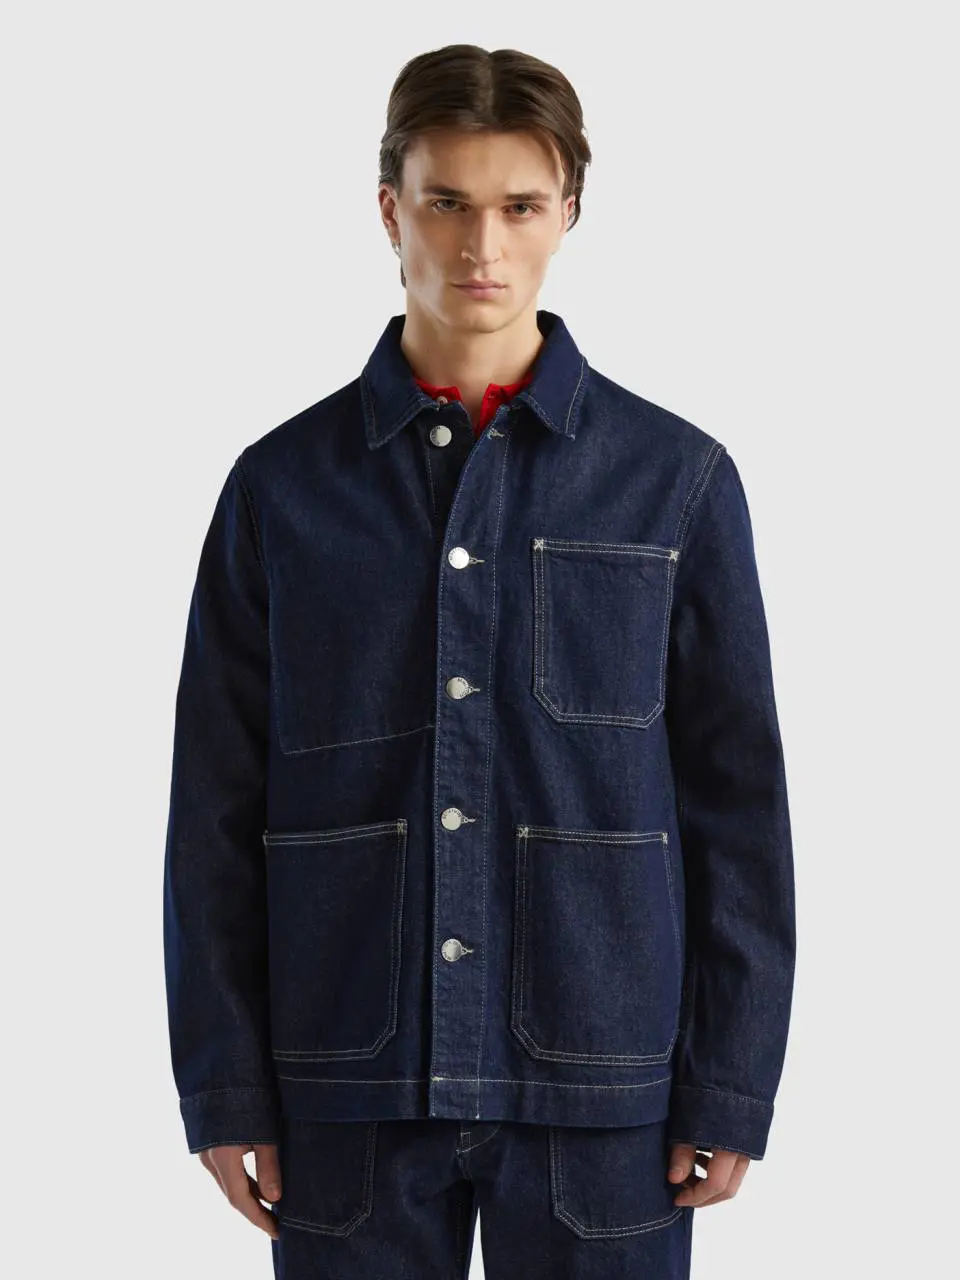 Benetton workwear denim jacket. 1